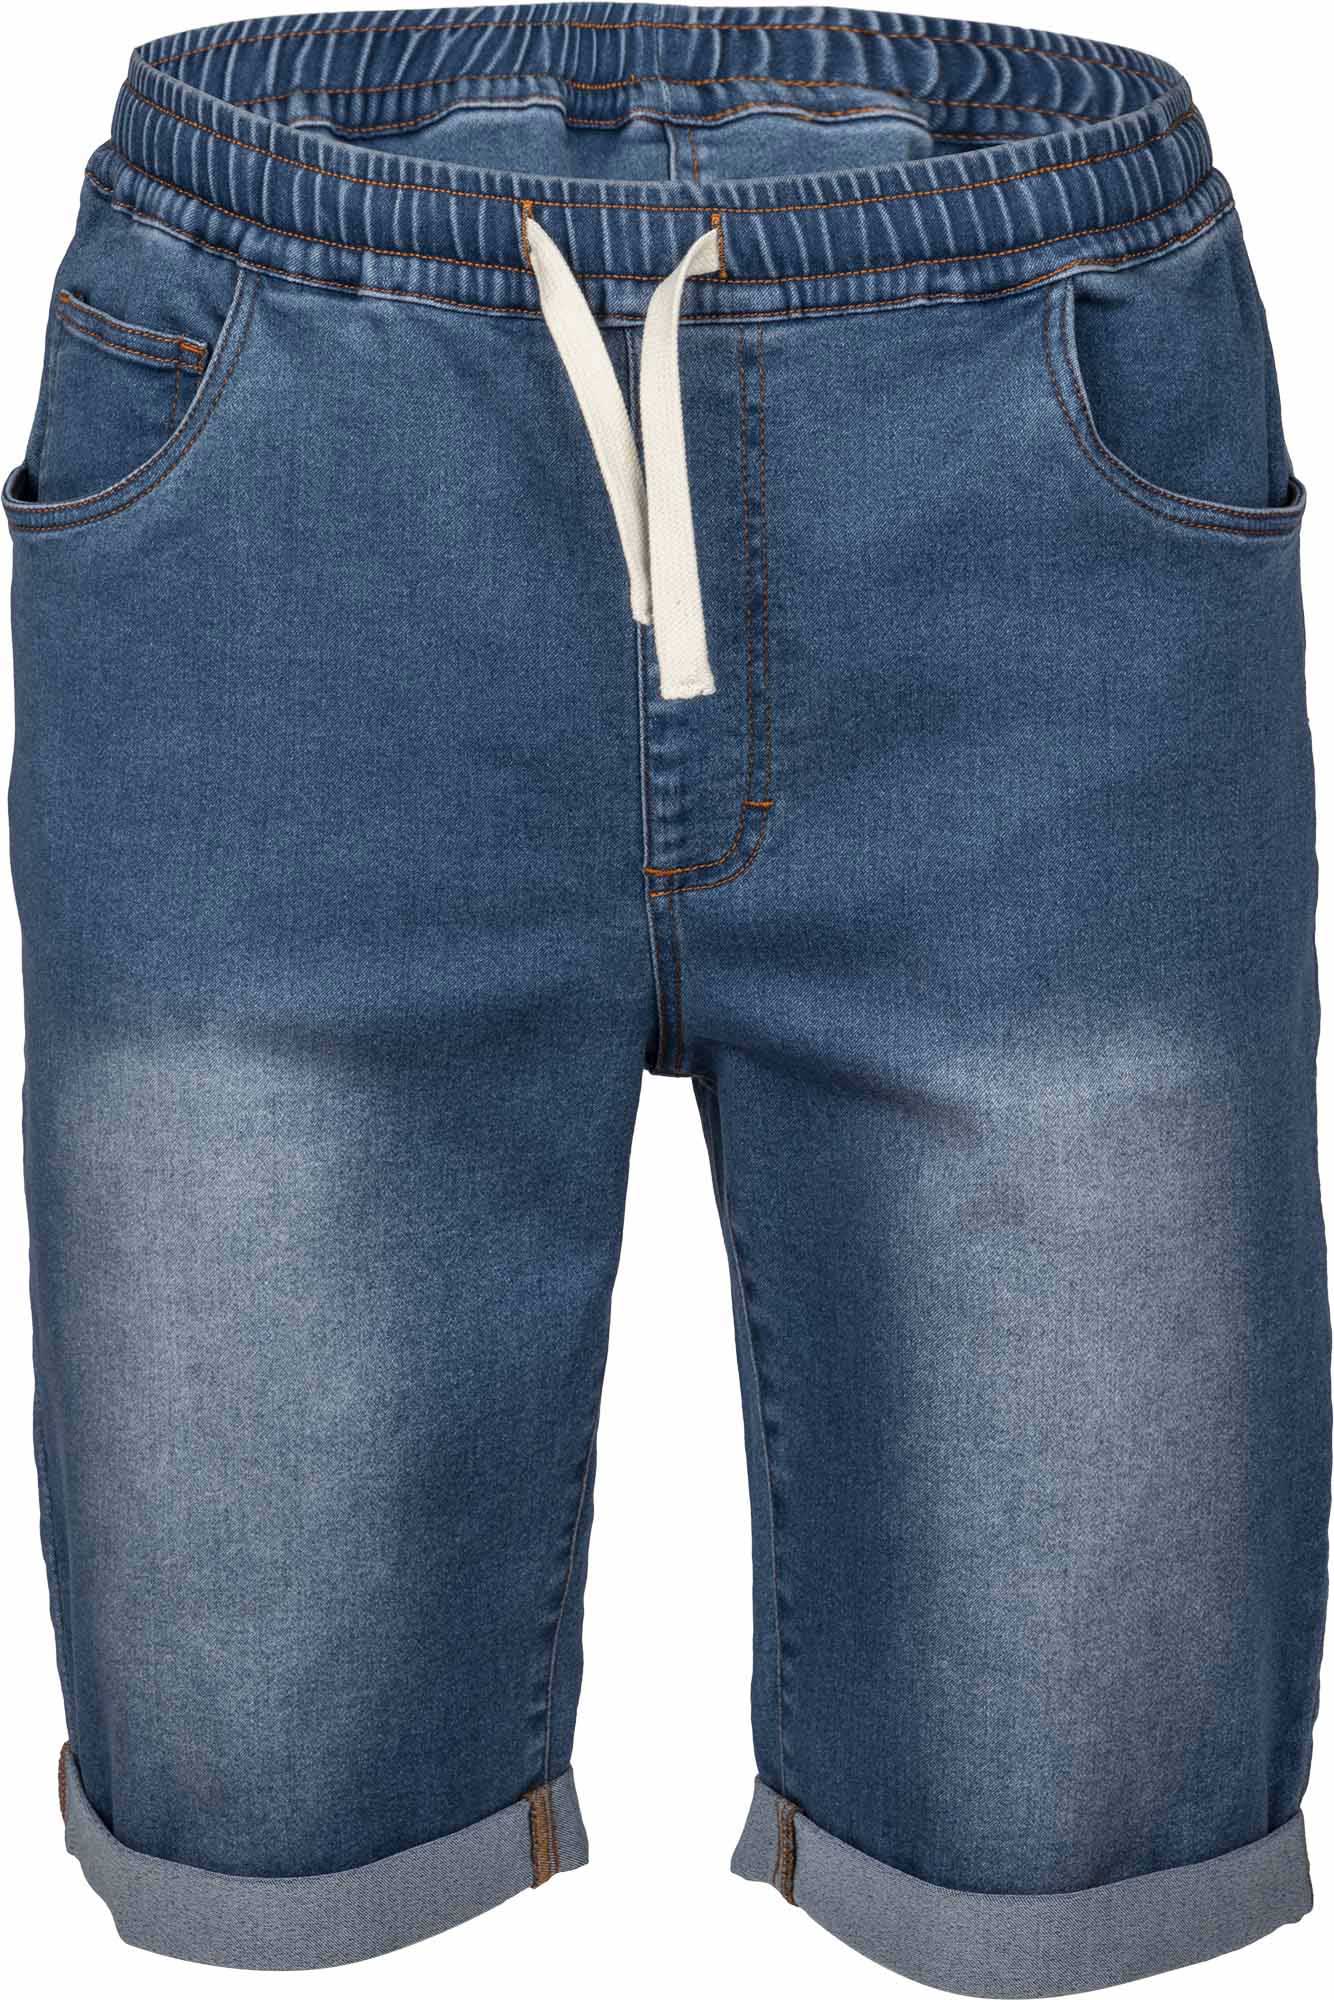 Herren Shorts im Jeanslook